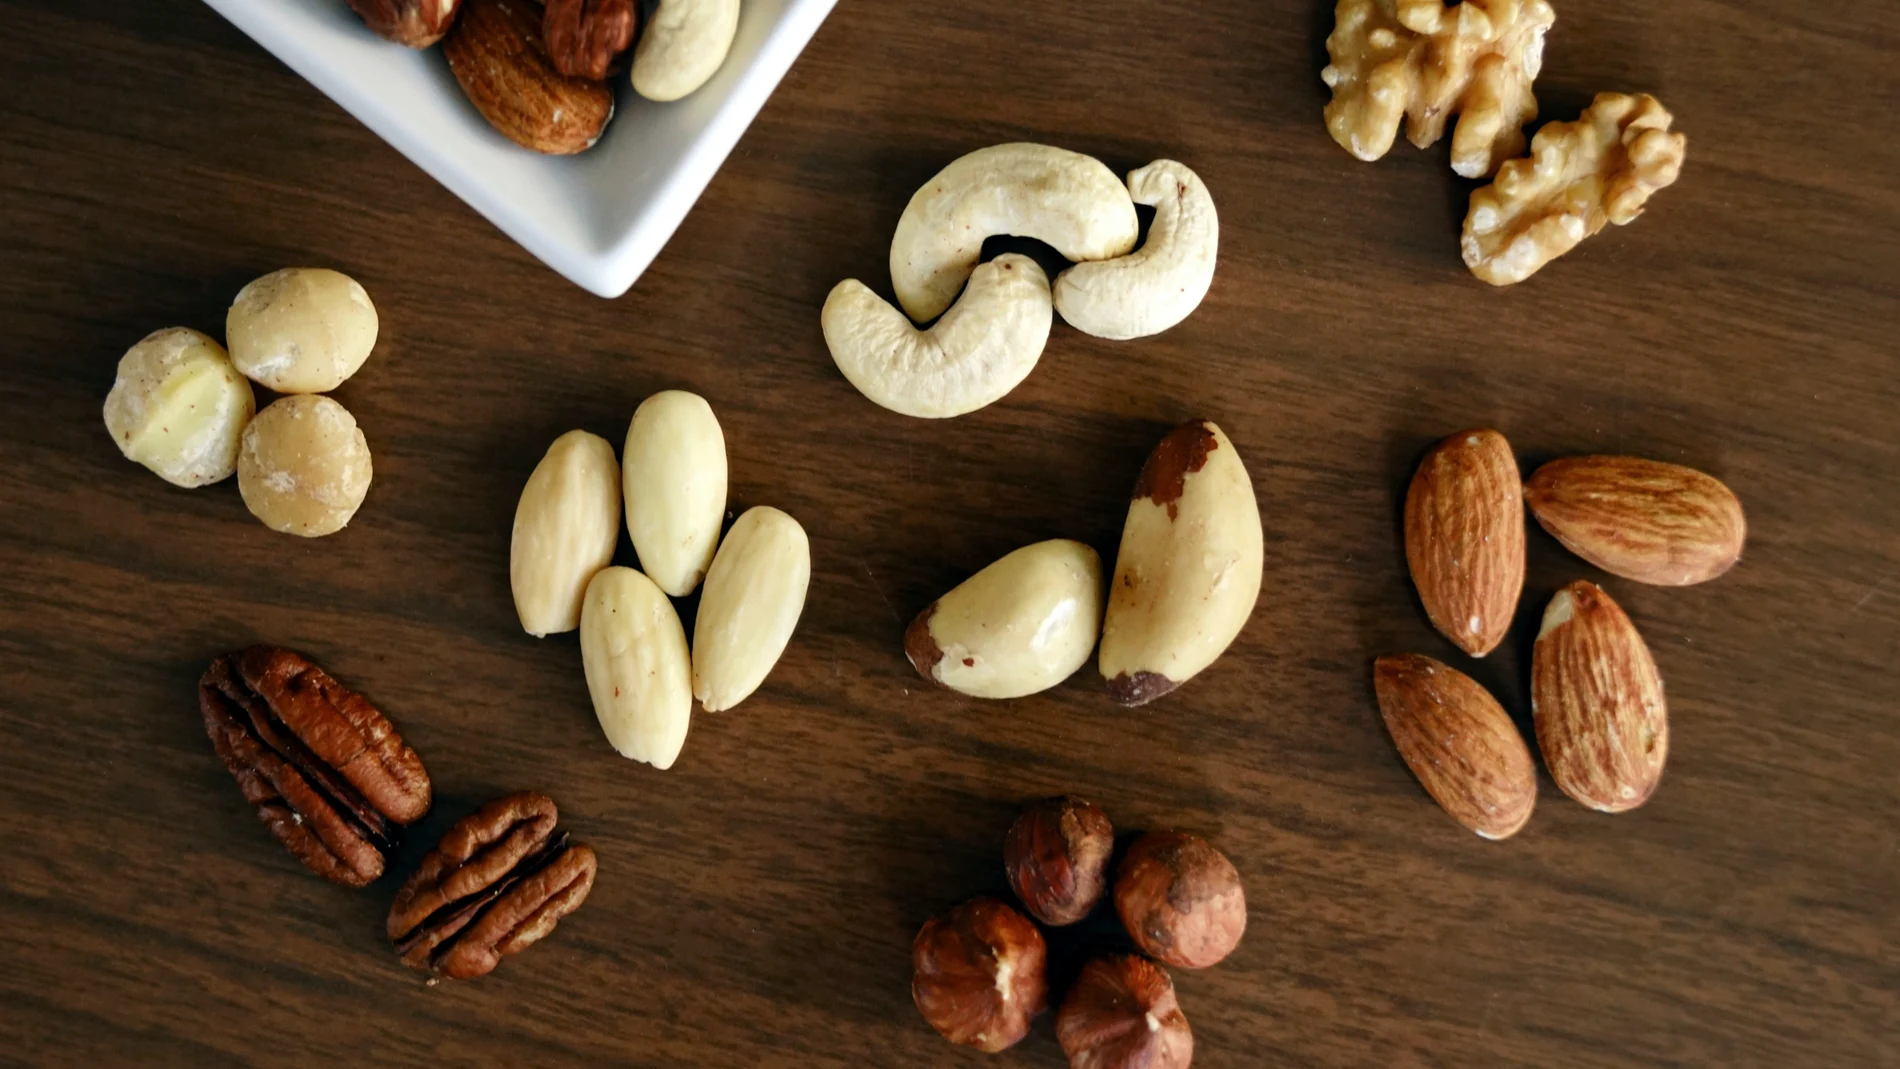 Picoteo sano: estos son los 5 mejores snacks para comer entre horas y no engordar (saciantes y con pocas calorías)